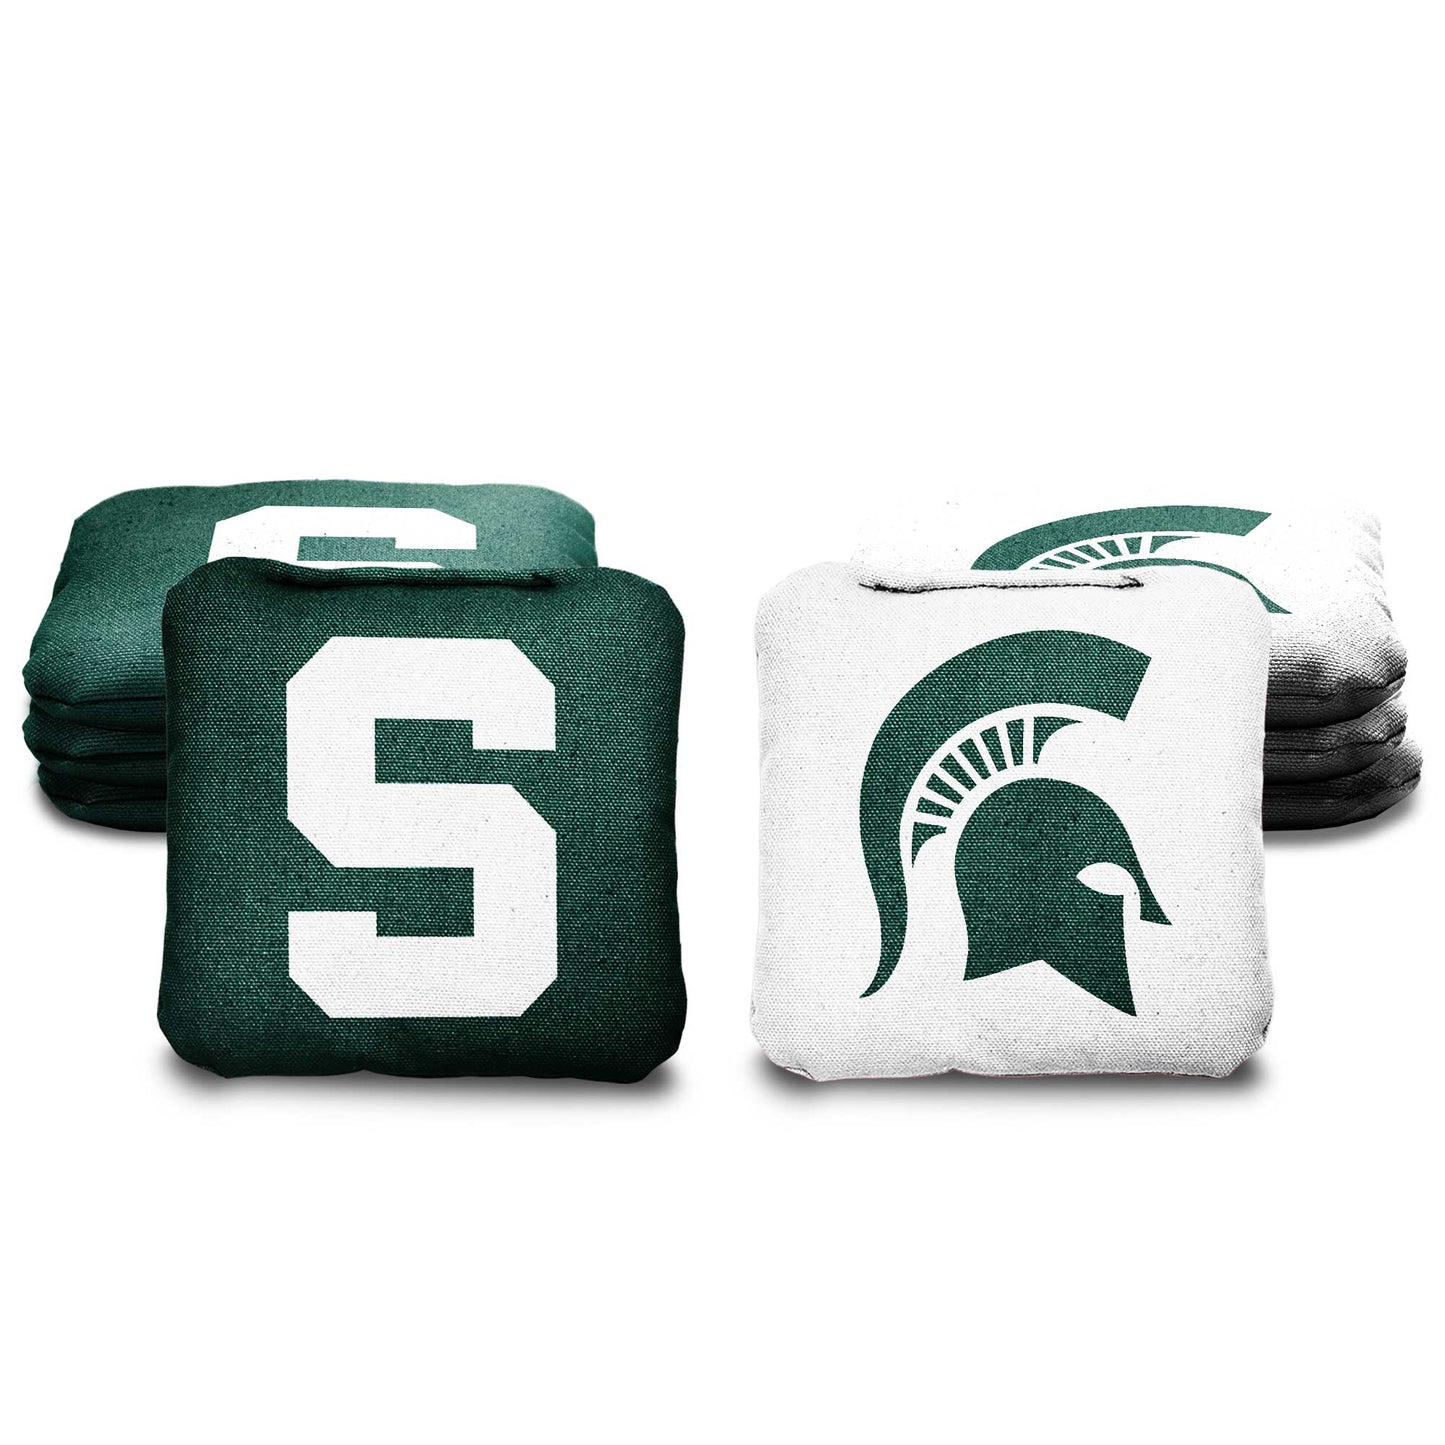 Michigan State University Cornhole Bags - 8 Cornhole Bags